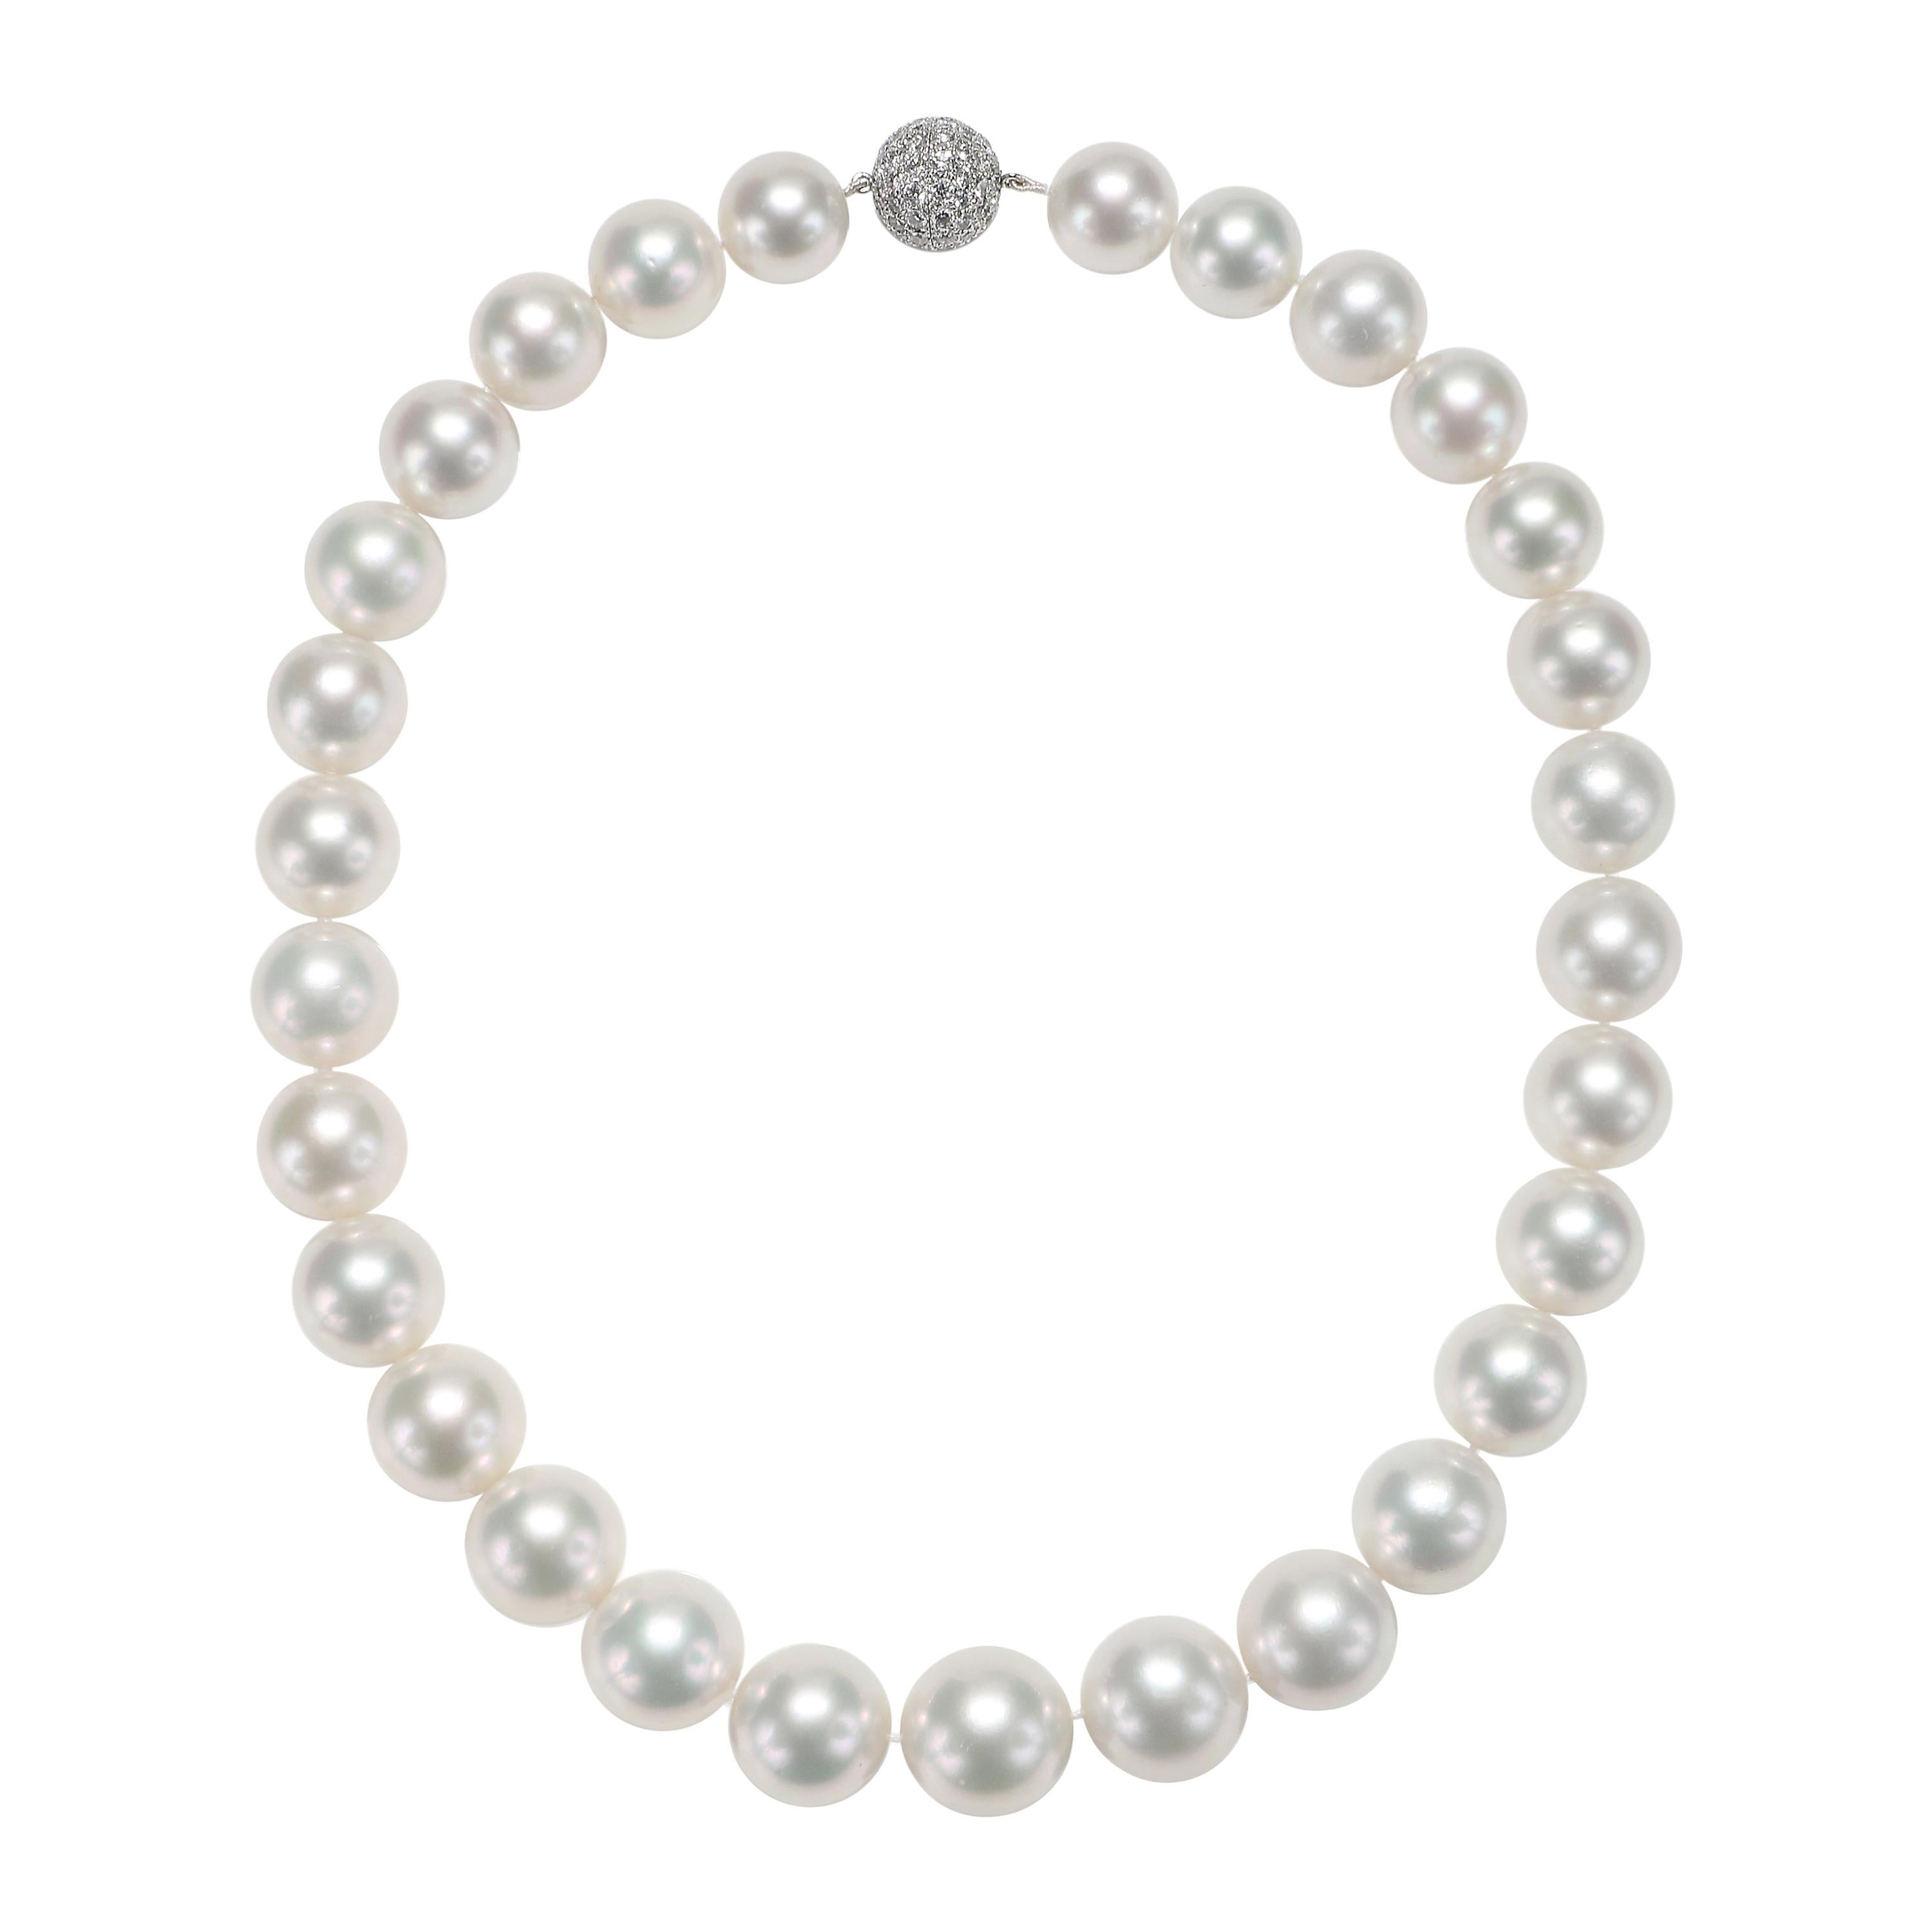 Collier de perles blanches des mers du Sud avec fermoir pavé de diamants en or blanc 18 carats